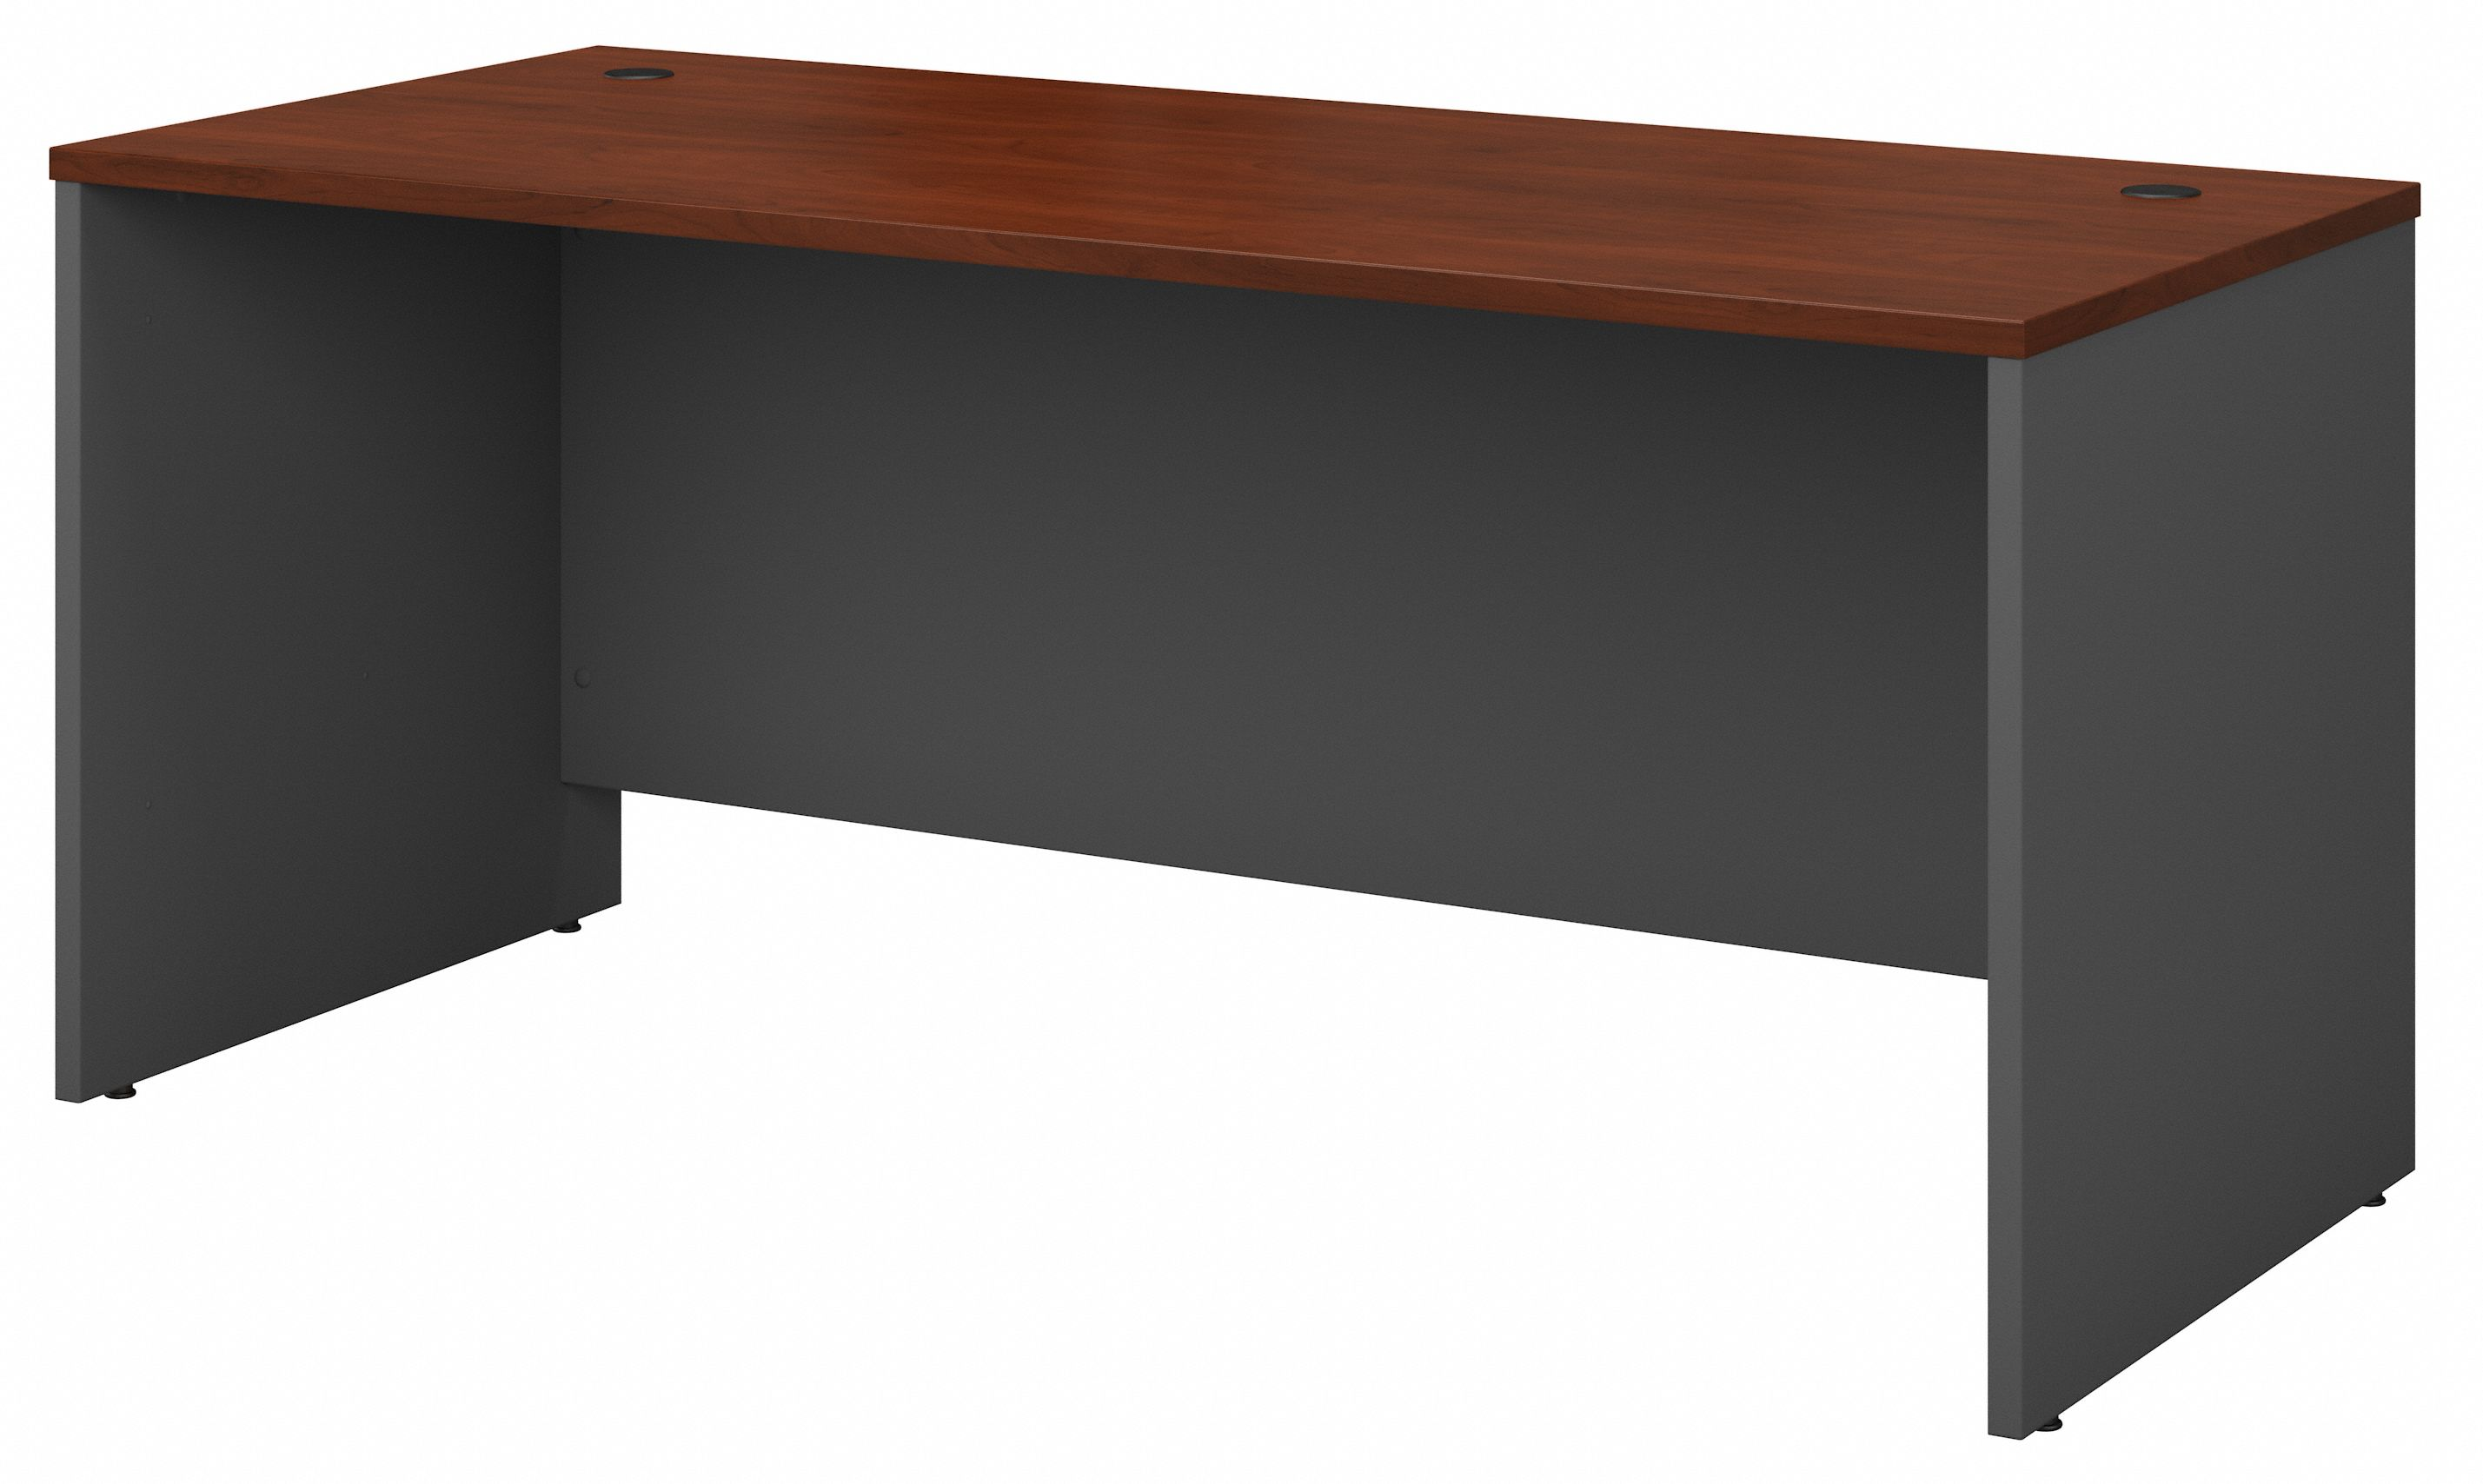 Shop Bush Business Furniture Series C 66W x 30D Office Desk 02 WC24442A #color_hansen cherry/graphite gray